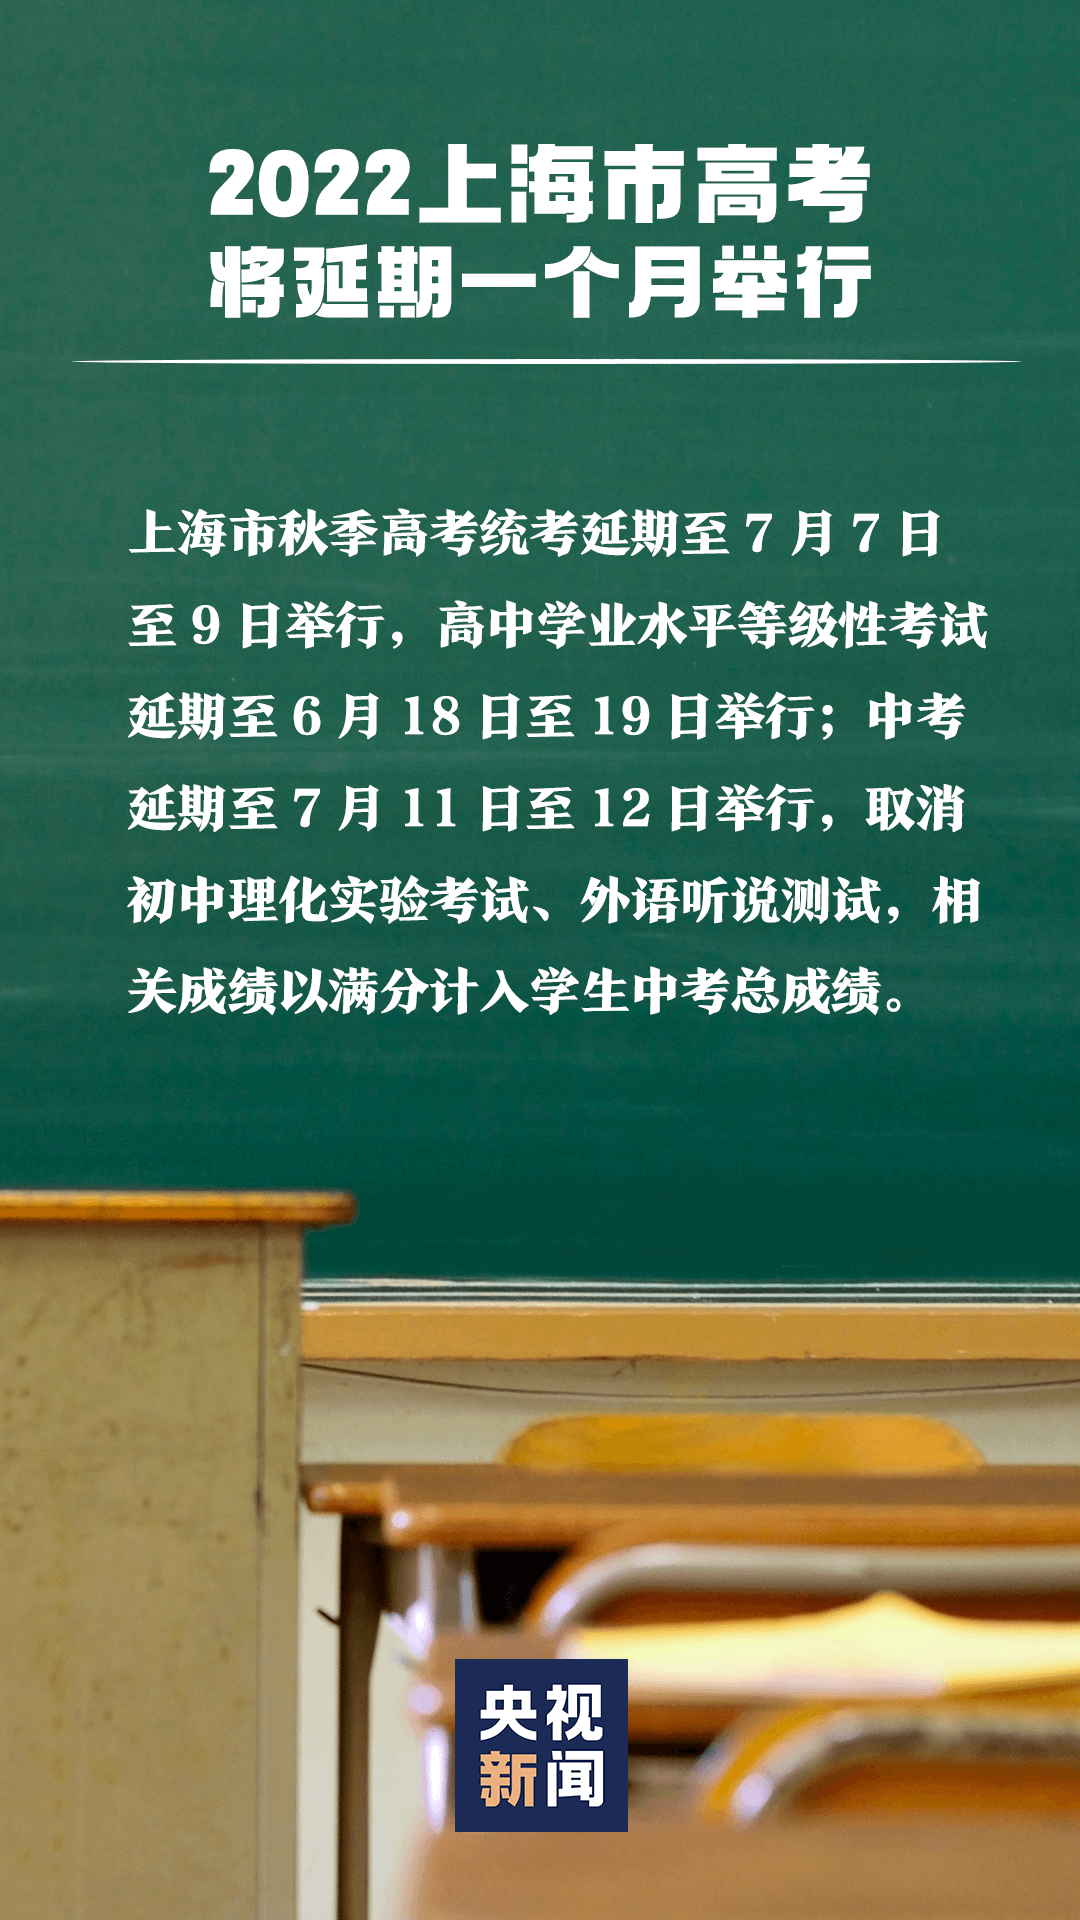 上海高考、中考延期举行